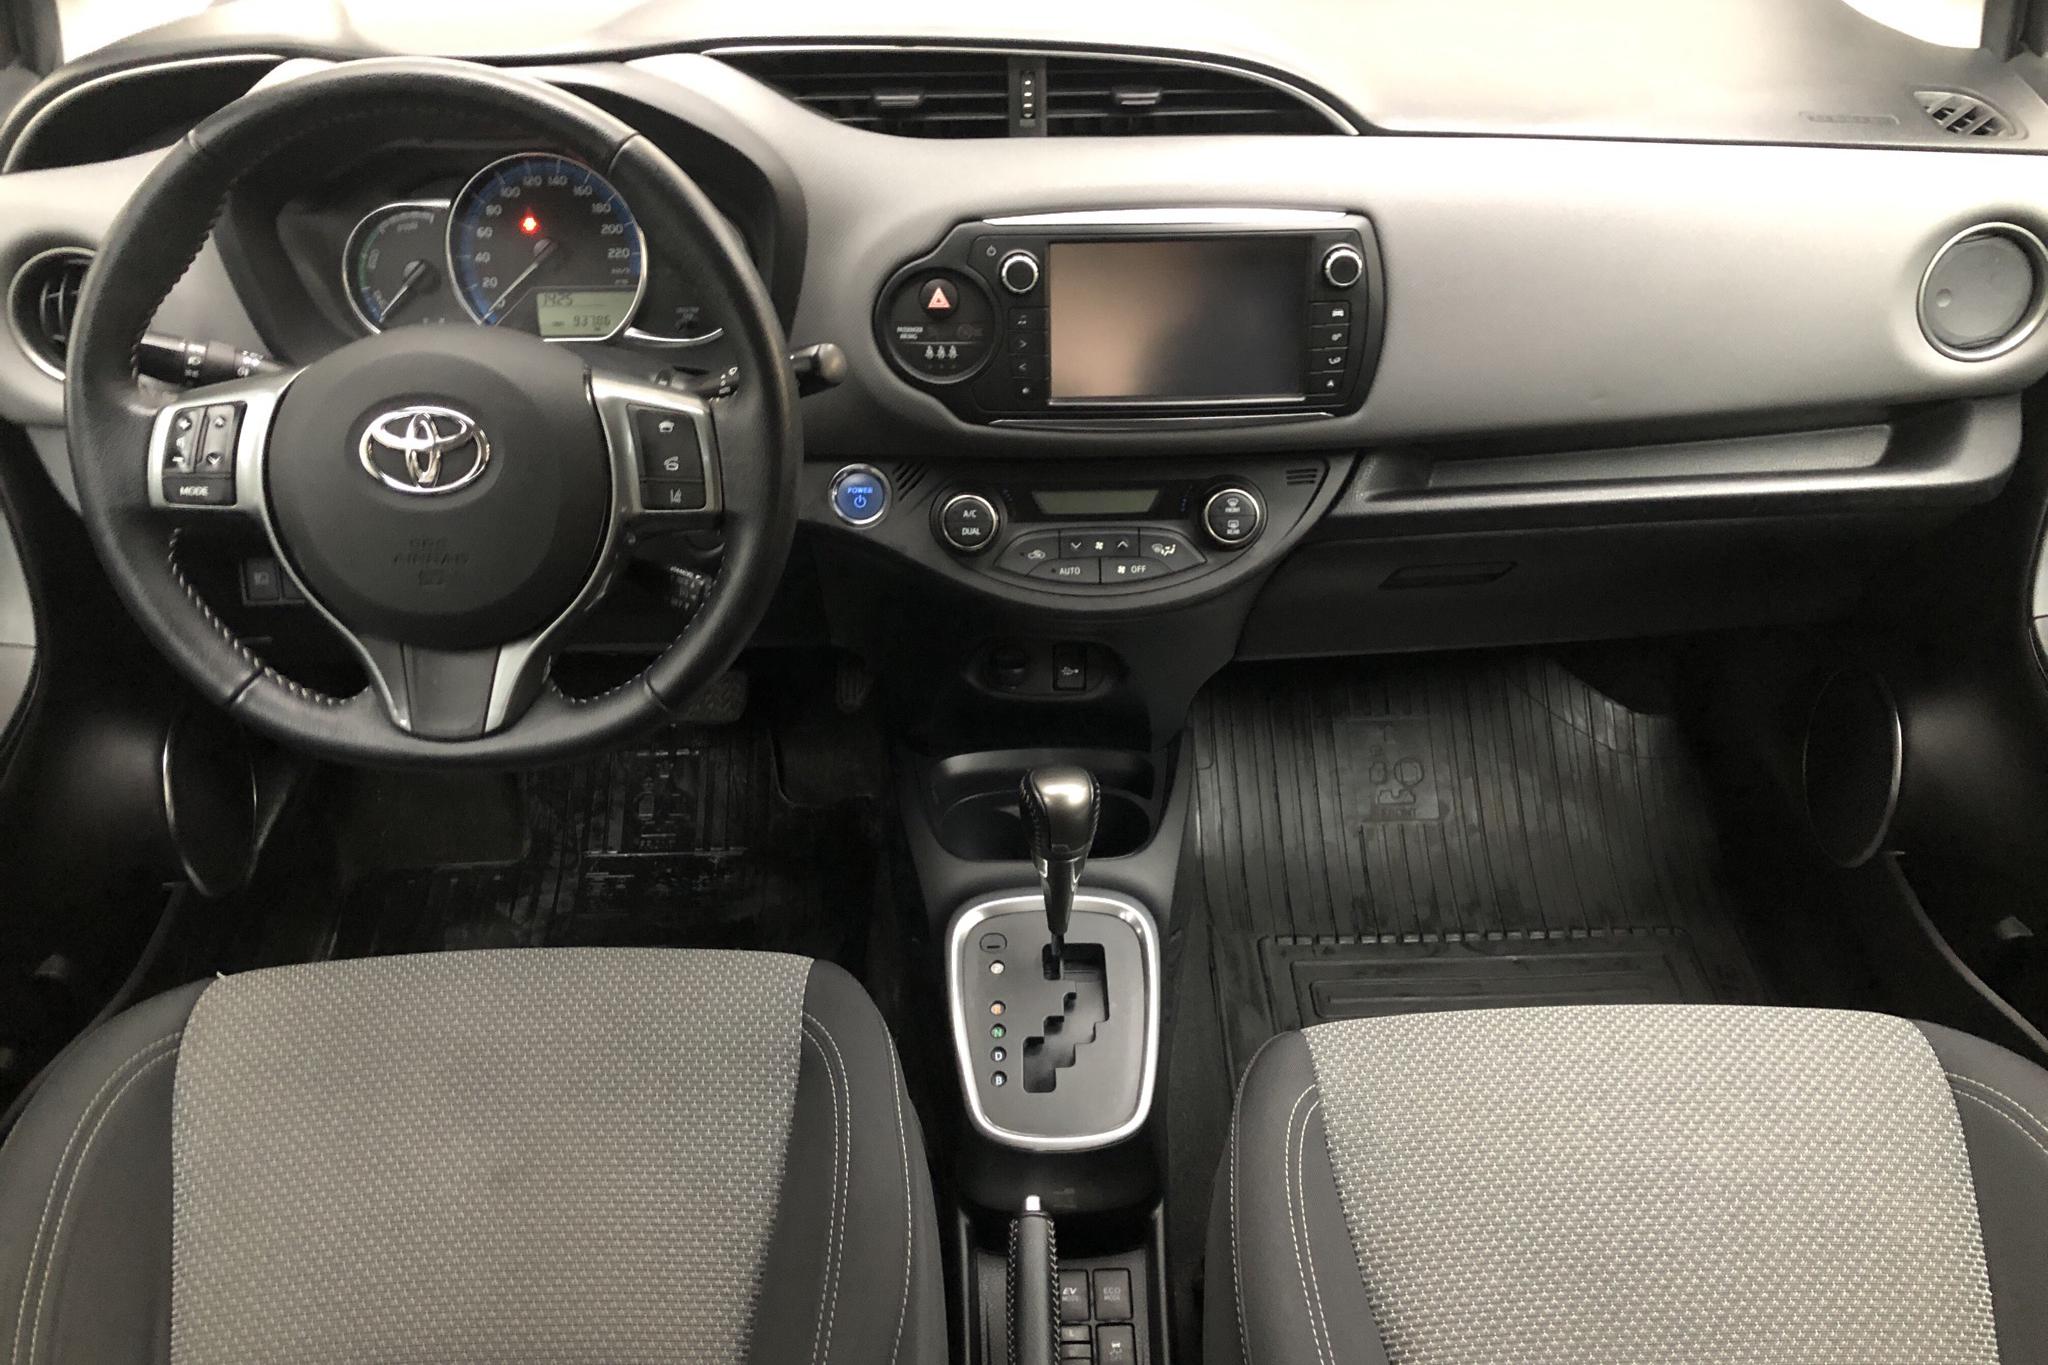 Toyota Yaris 1.5 HSD 5dr (75hk) - 9 380 mil - Automat - svart - 2016